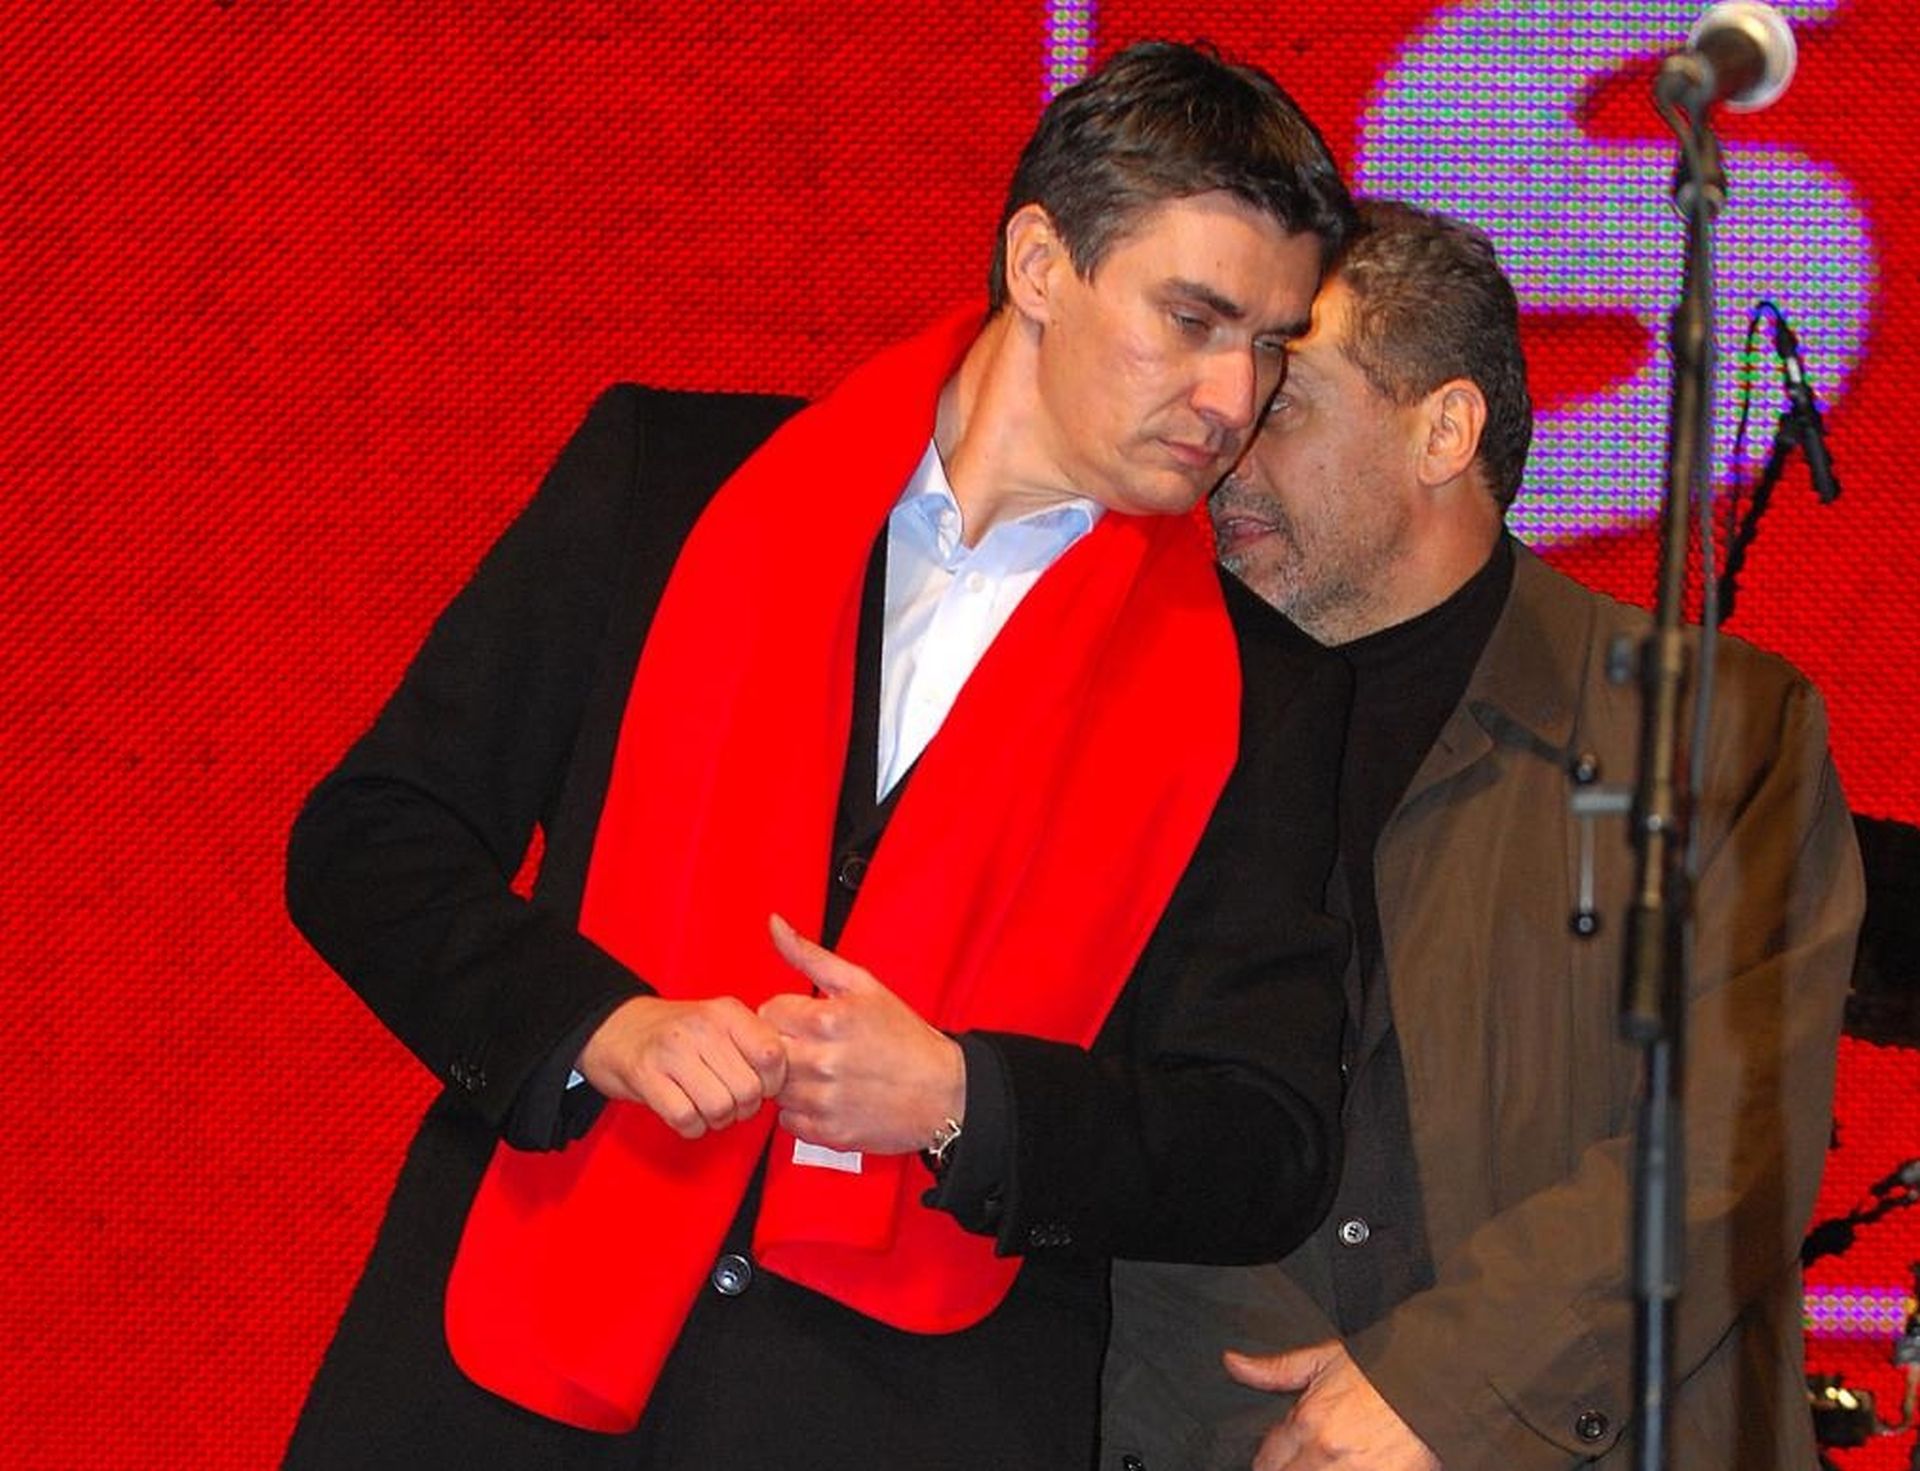 22.11.2007., Zagreb - Zoran Milanovic i Milan Bandic na predizbornom skupu SDP-a na Trgu bana Jelacica tijekom parlamentarnih izbora 2007. 
Photo: Patrik Macek/PIXSELL